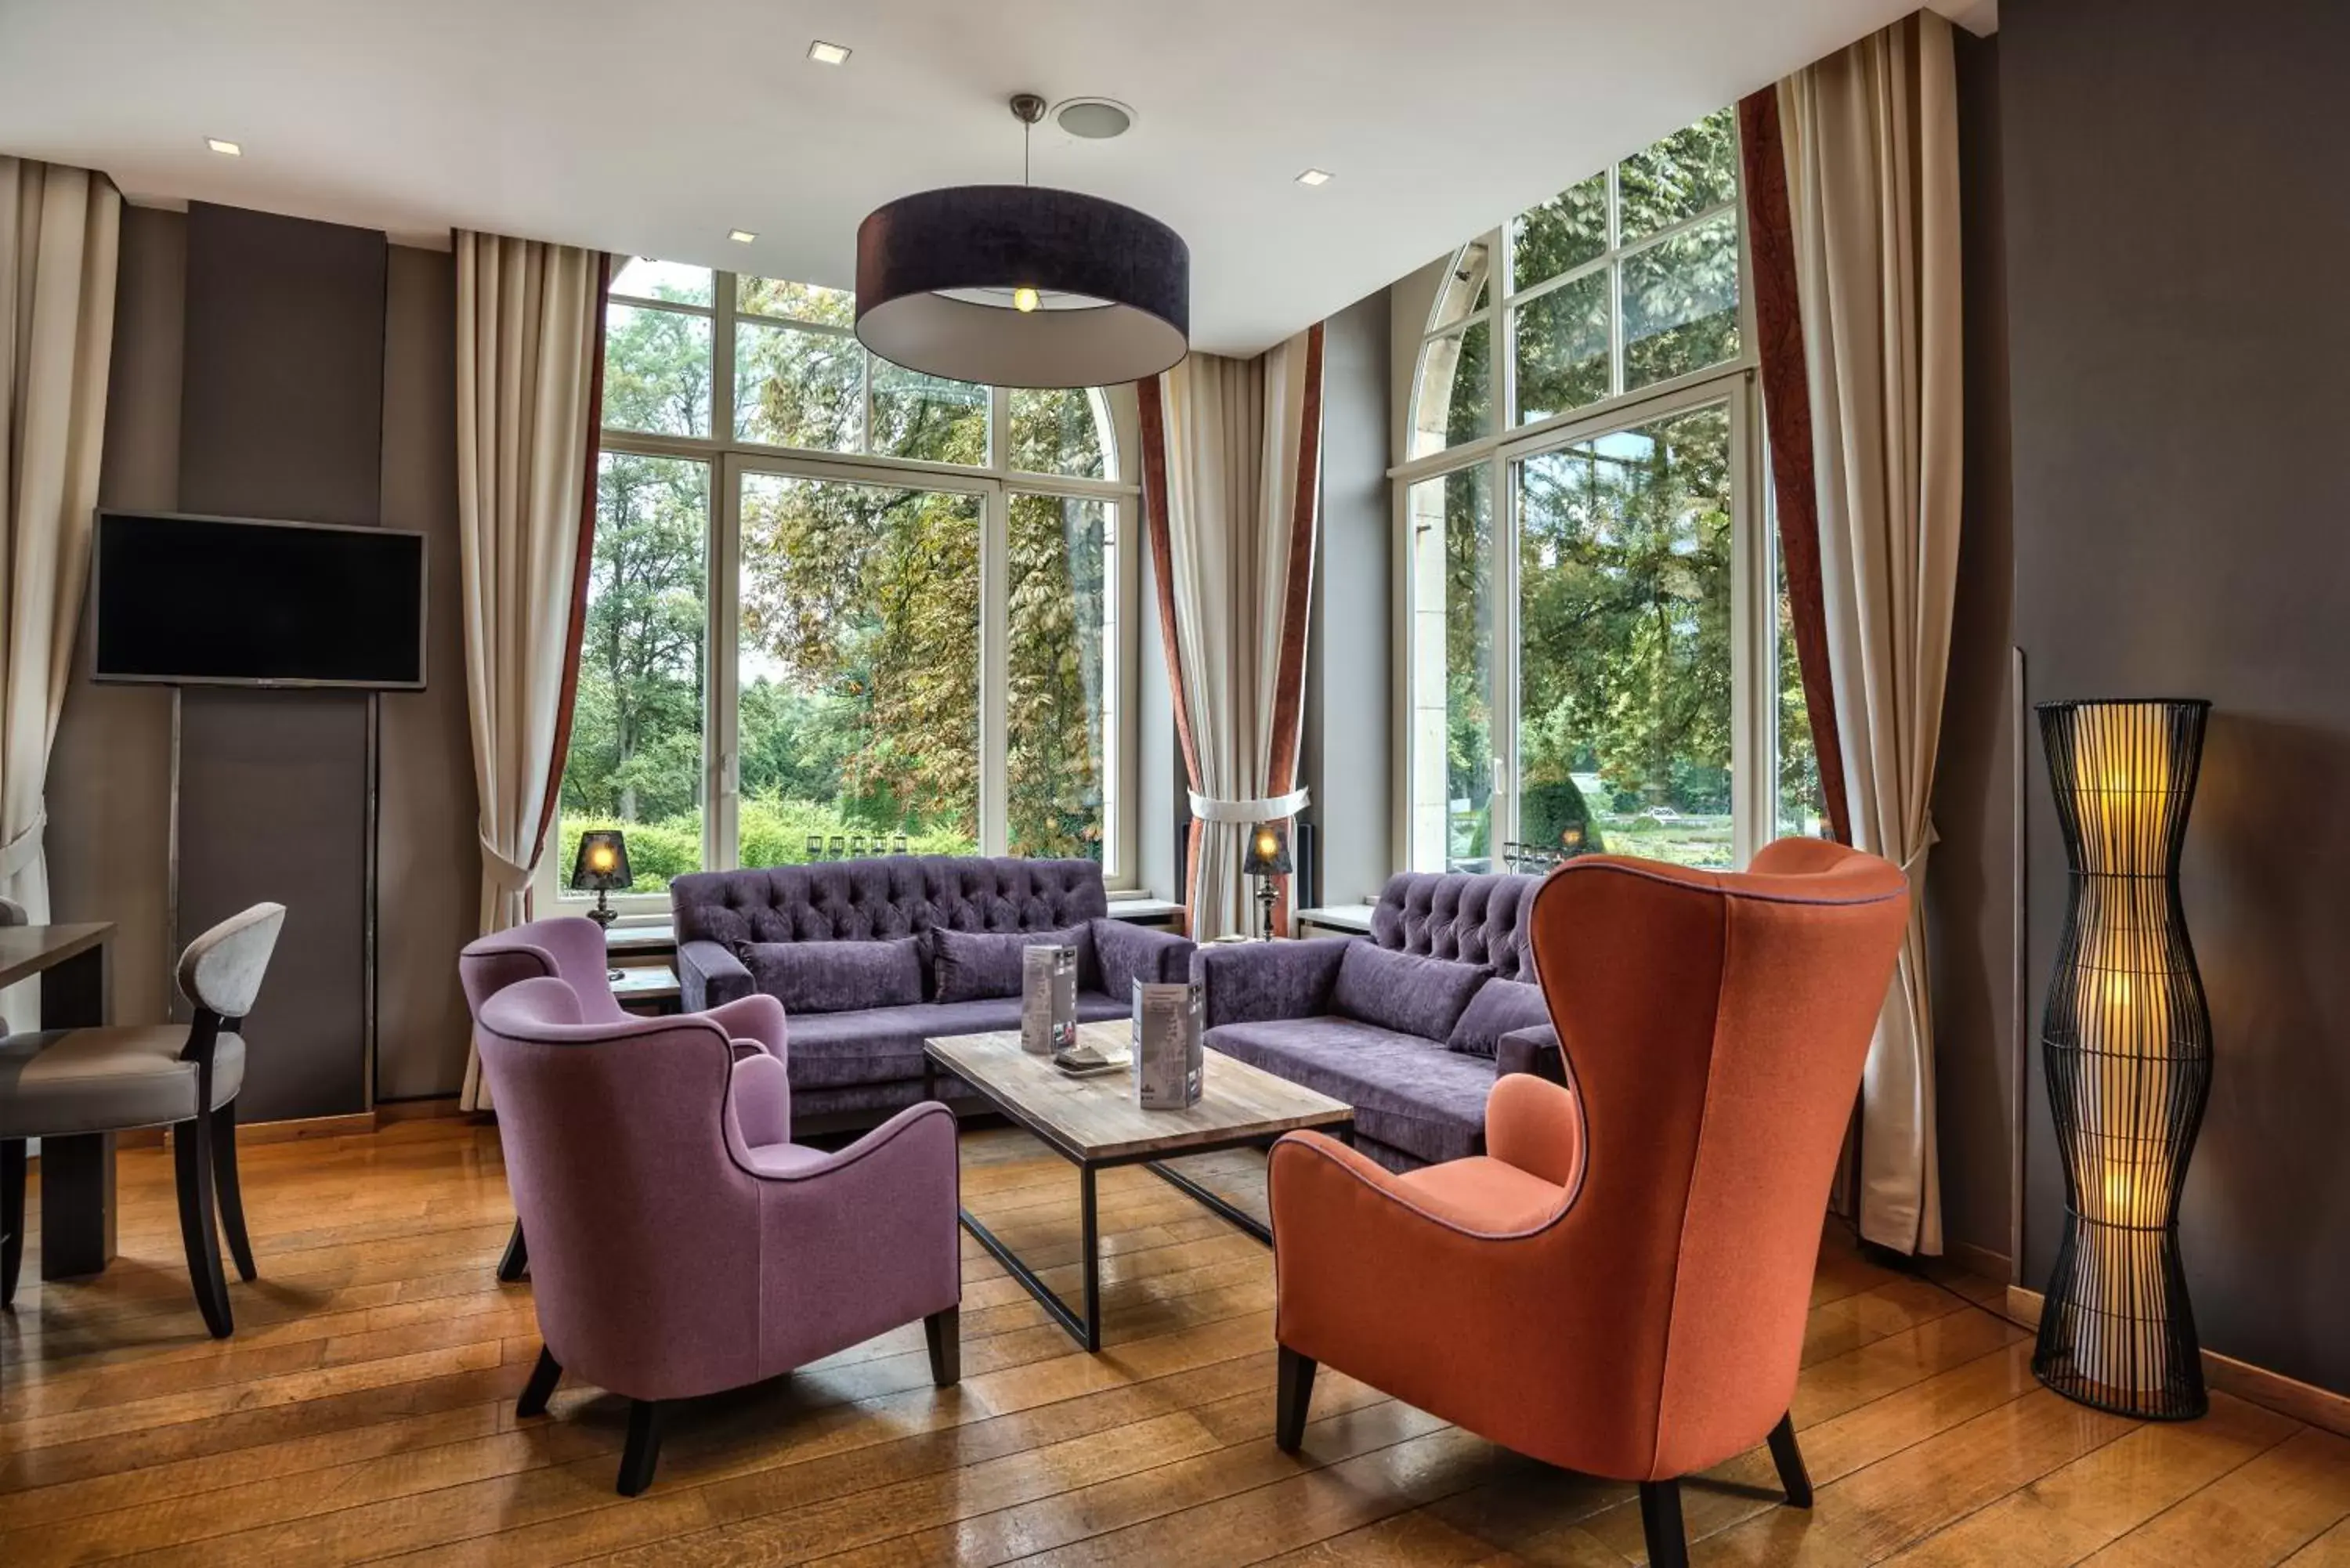 Lounge or bar, Seating Area in Le Chateau de Namur